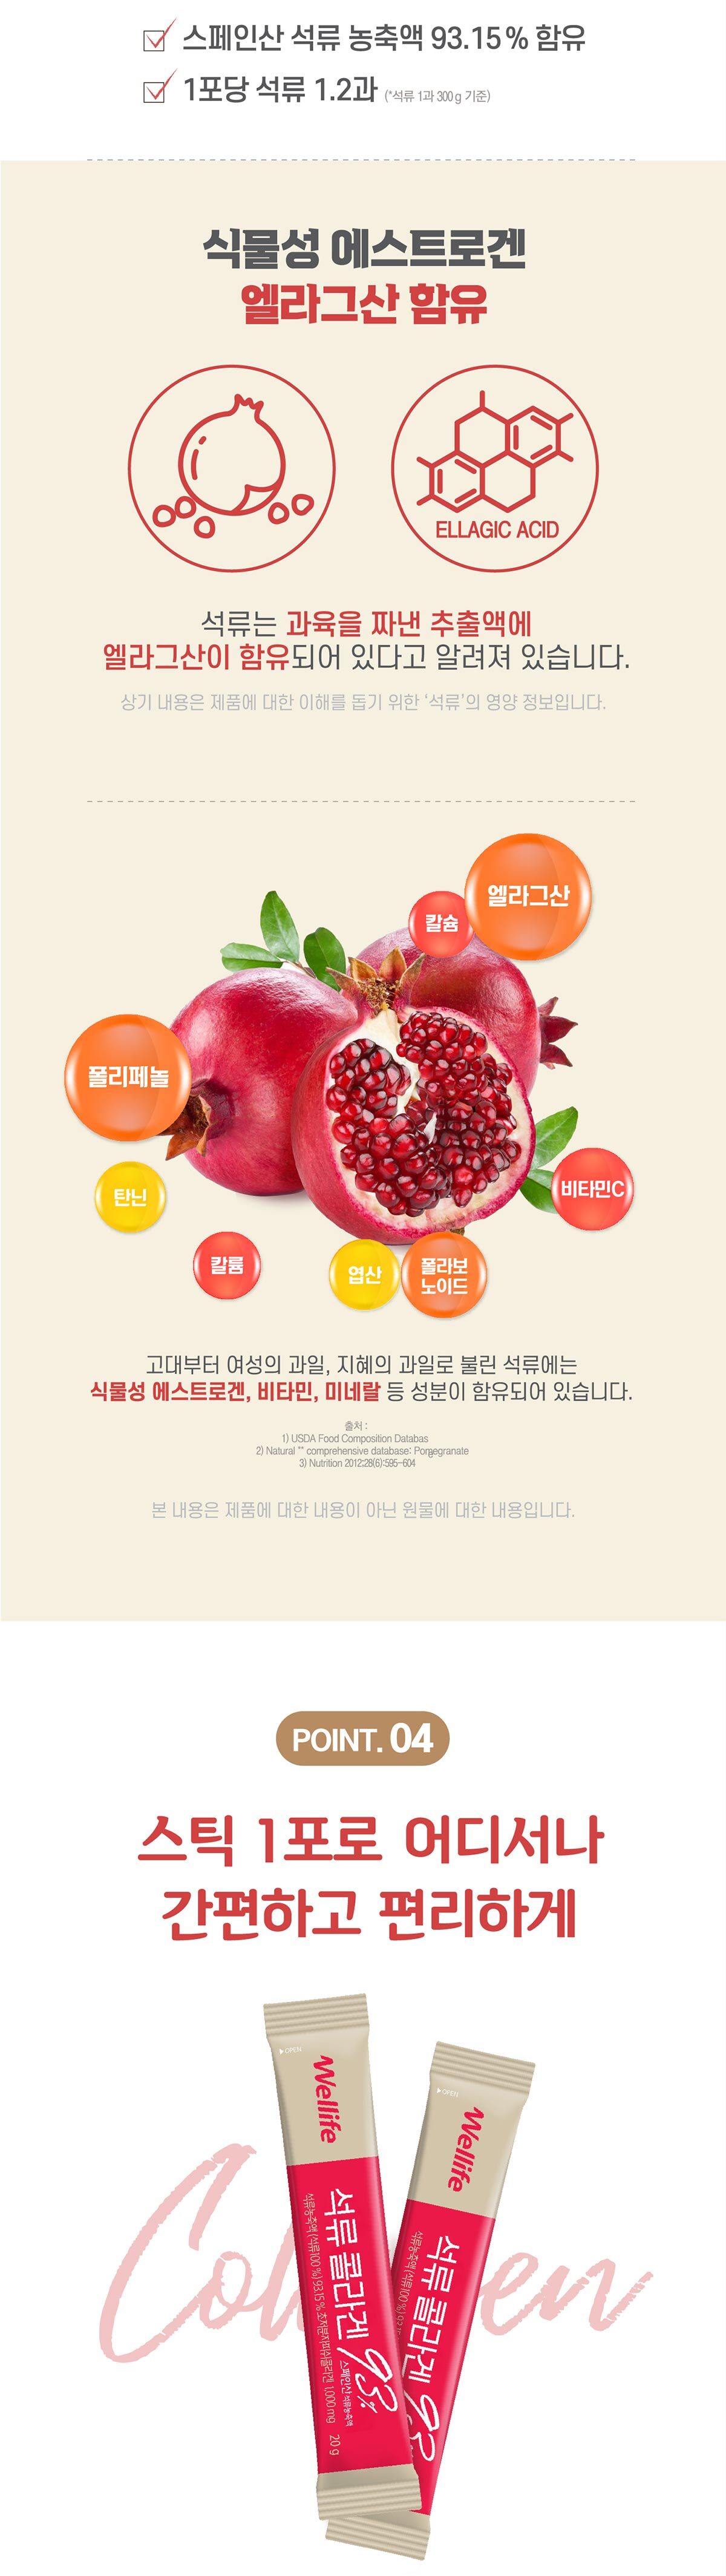 pomegranate_collagen_4.jpg